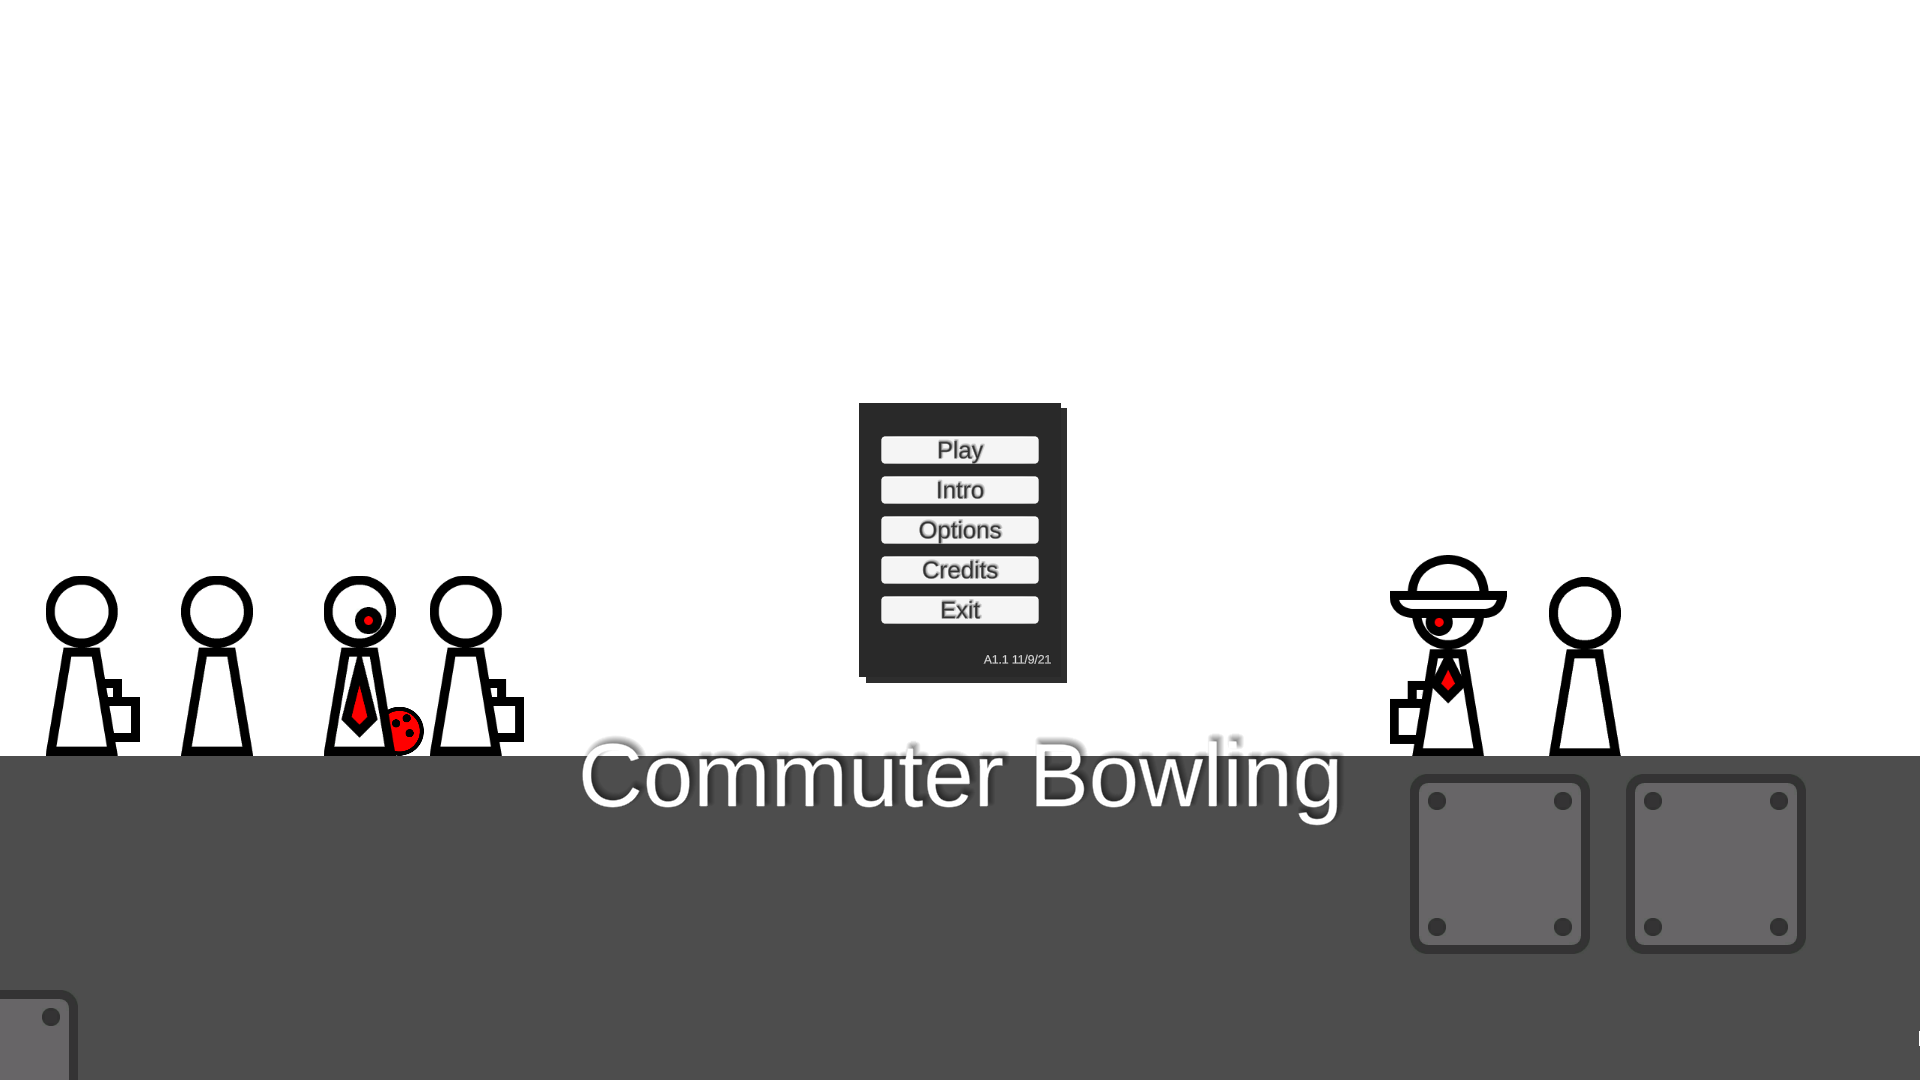 Commuter Bowling